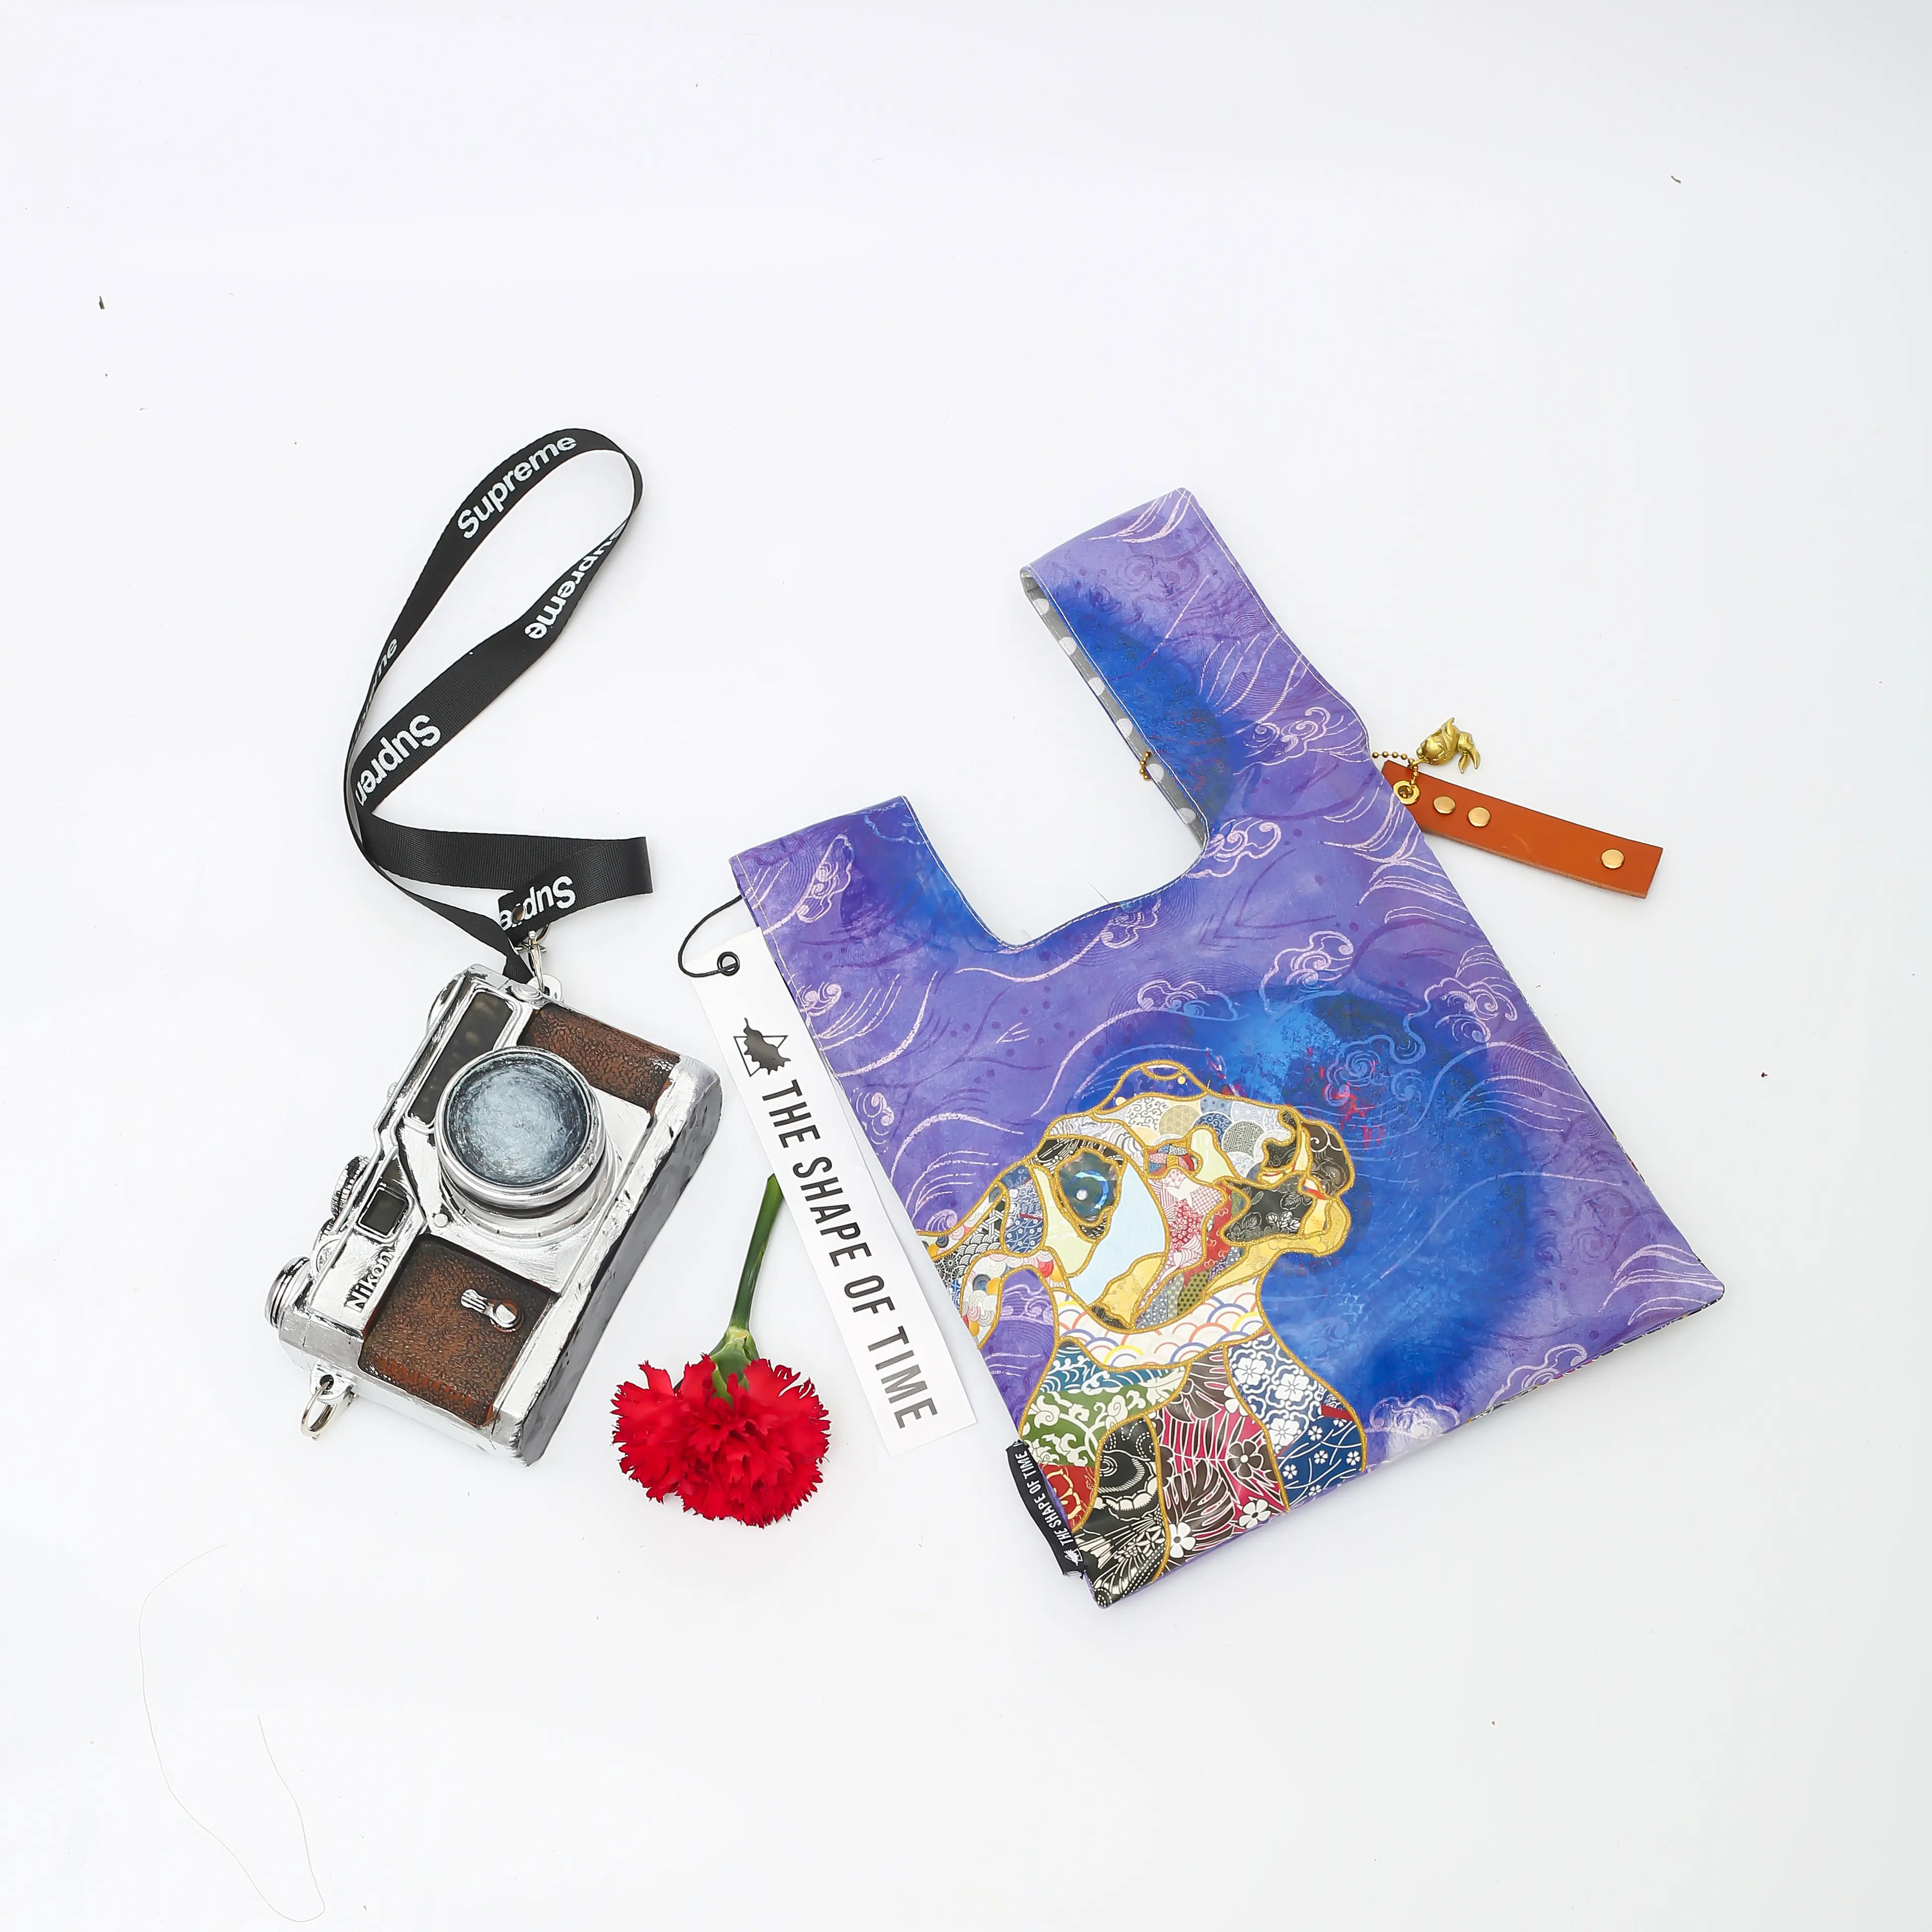 손목 스트랩 매듭 디자인 핸드백 및 지갑이있는 수제 미니 레저 재사용 가능한 쇼핑백